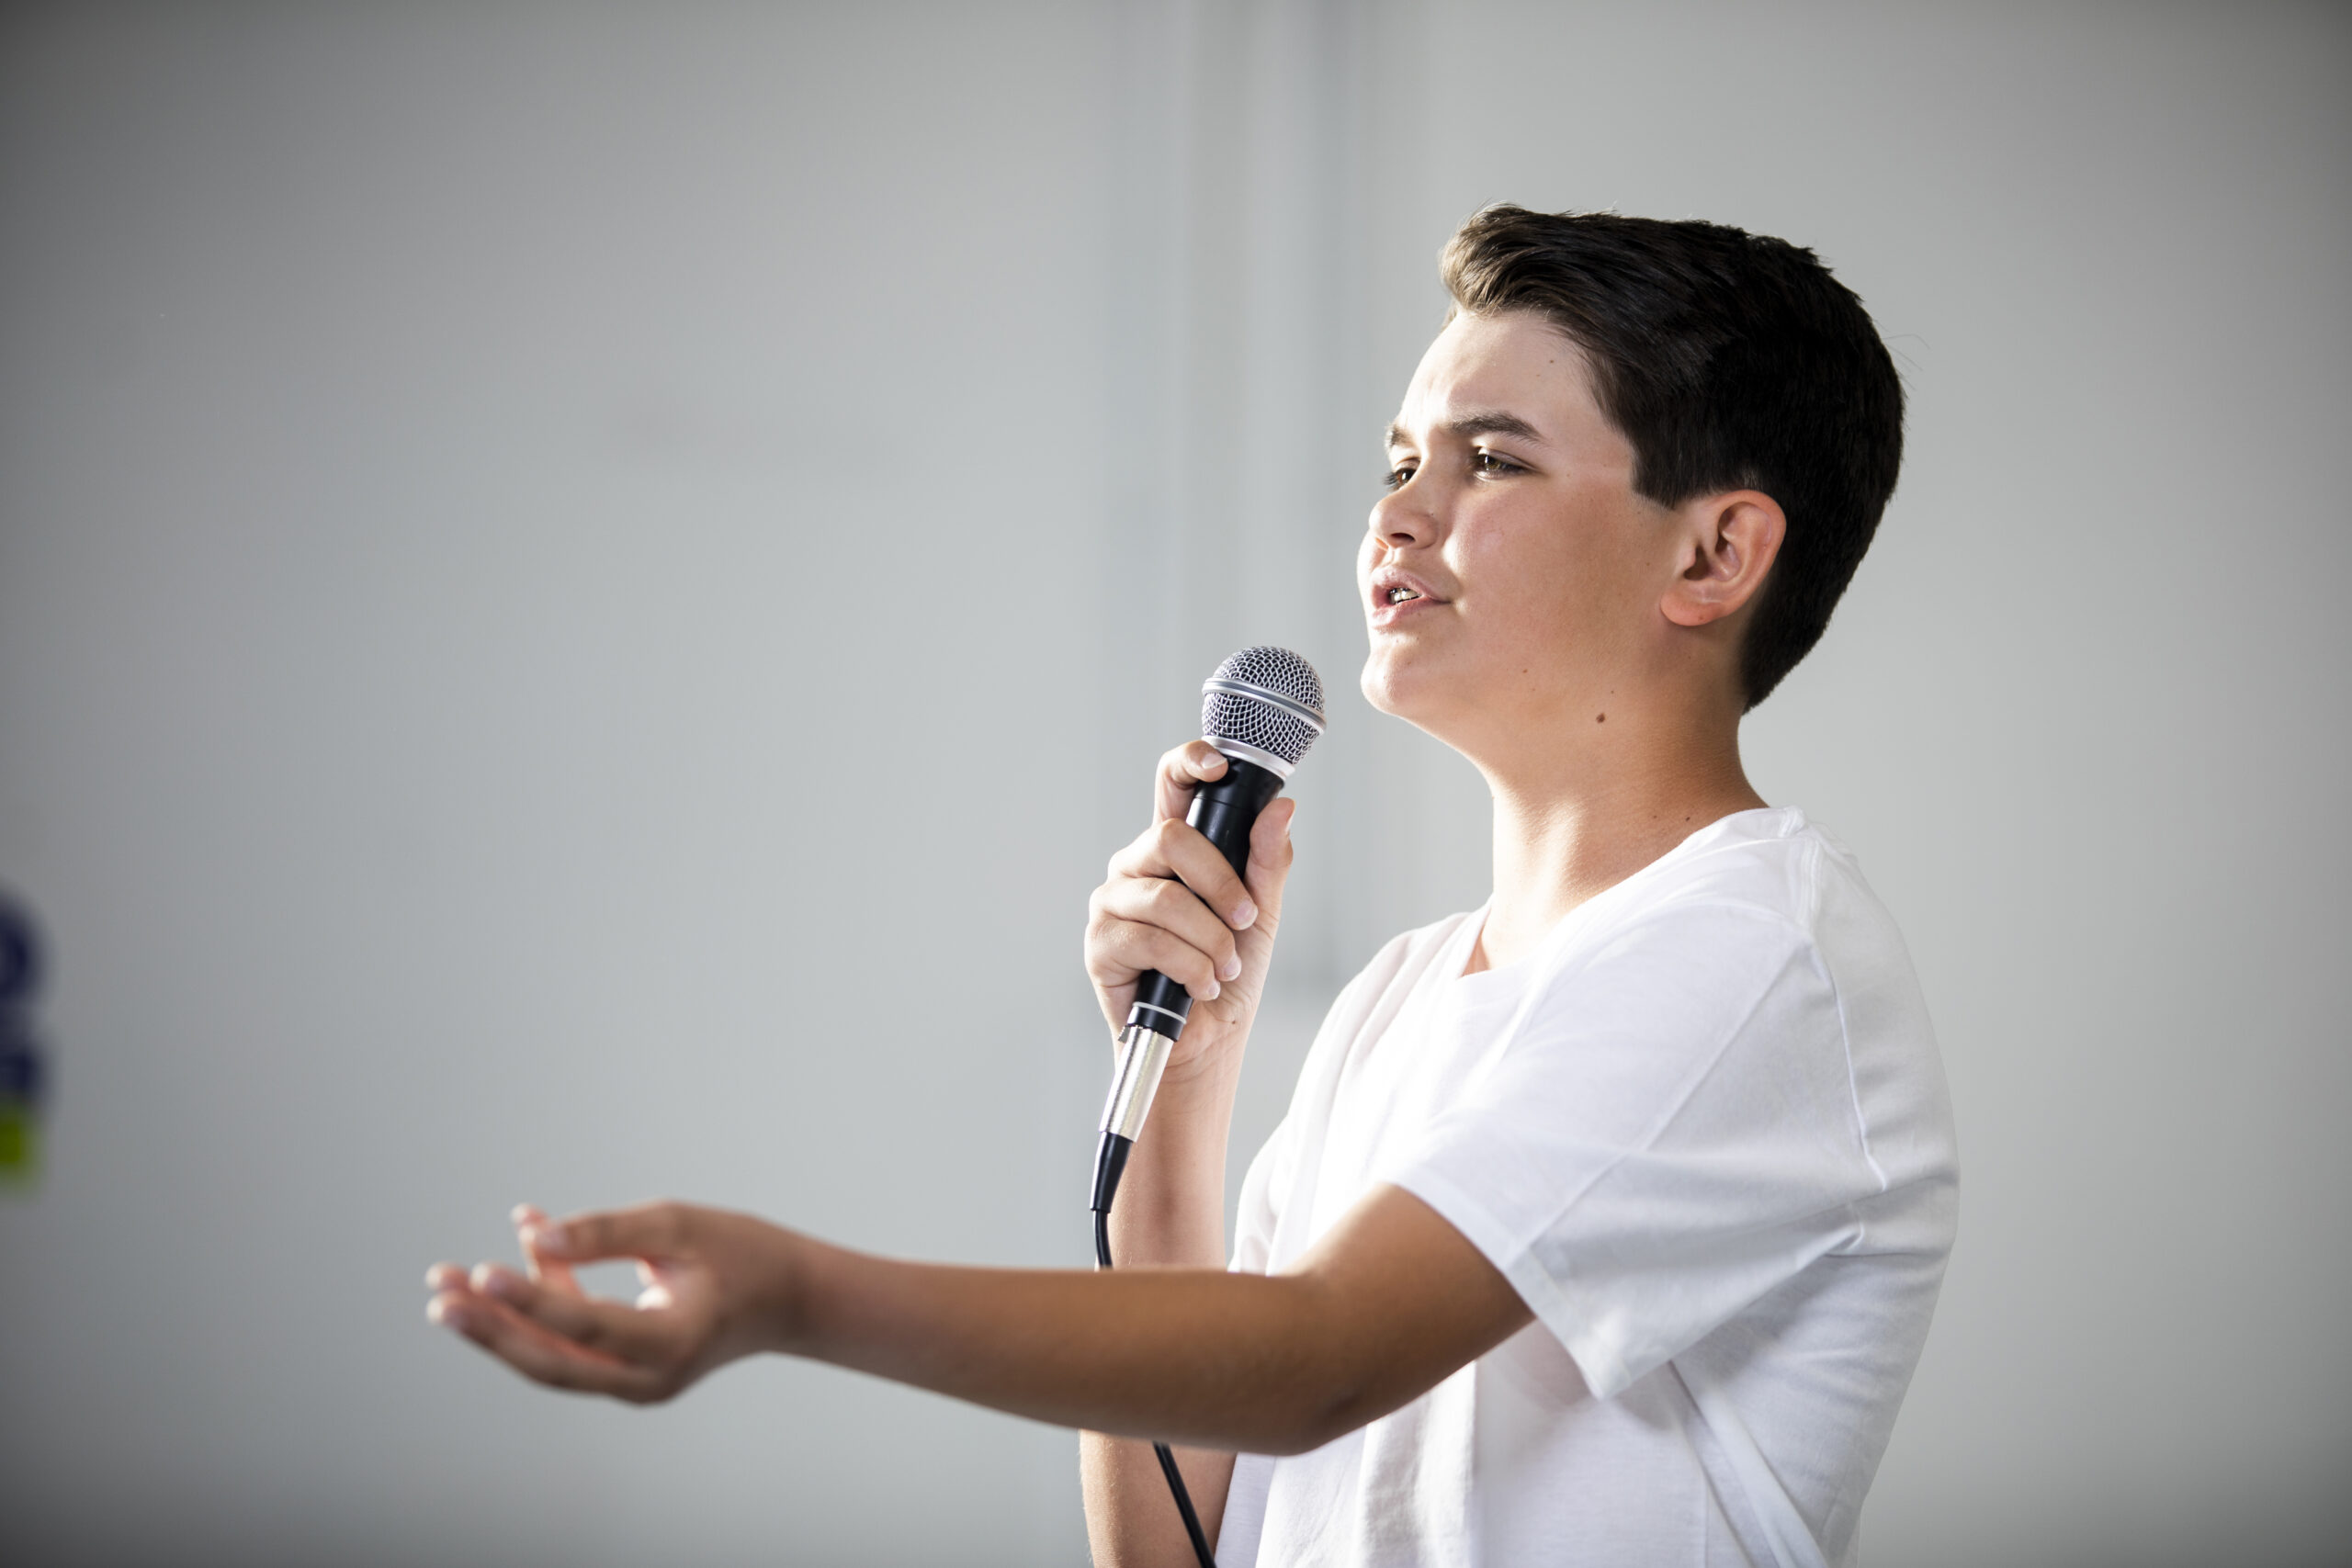 Teenage Boy Singing in Studio